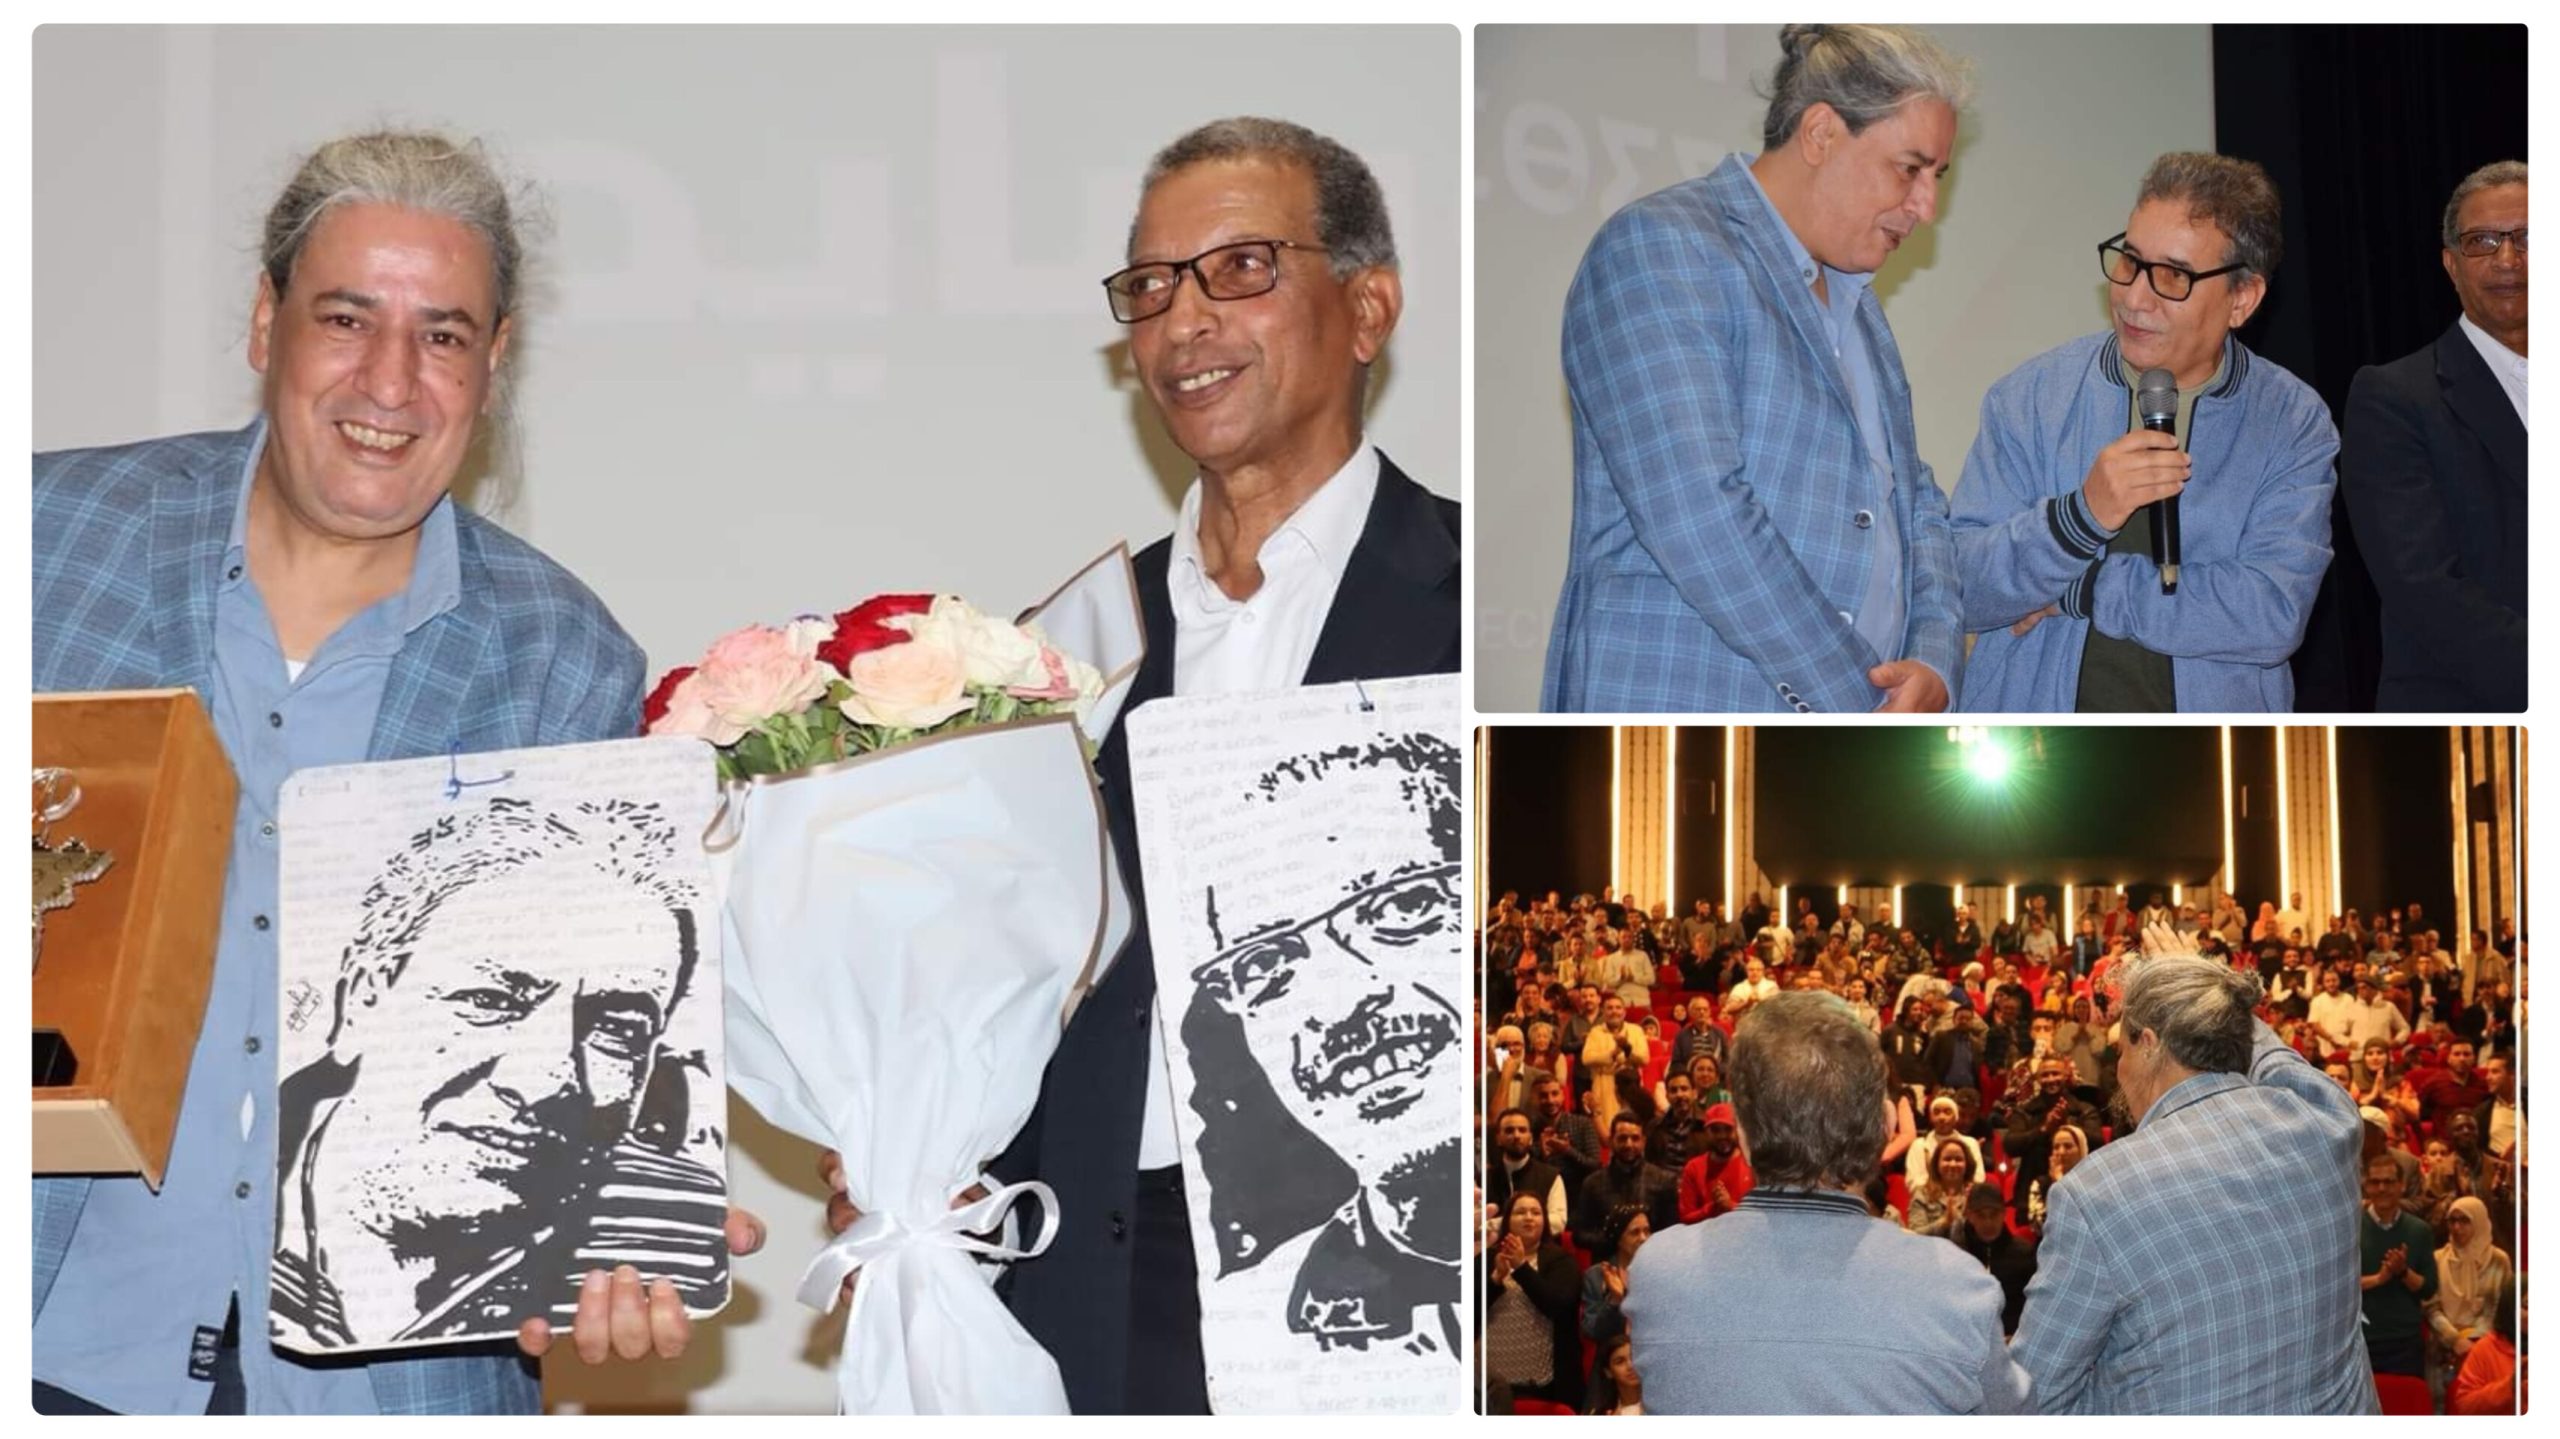 تكريم المخرج السينمائي الأمازيغي "عزيز أوالسايح " في اختتام فعاليات أيام الفيلم المغربي بأكادير - AgadirToday